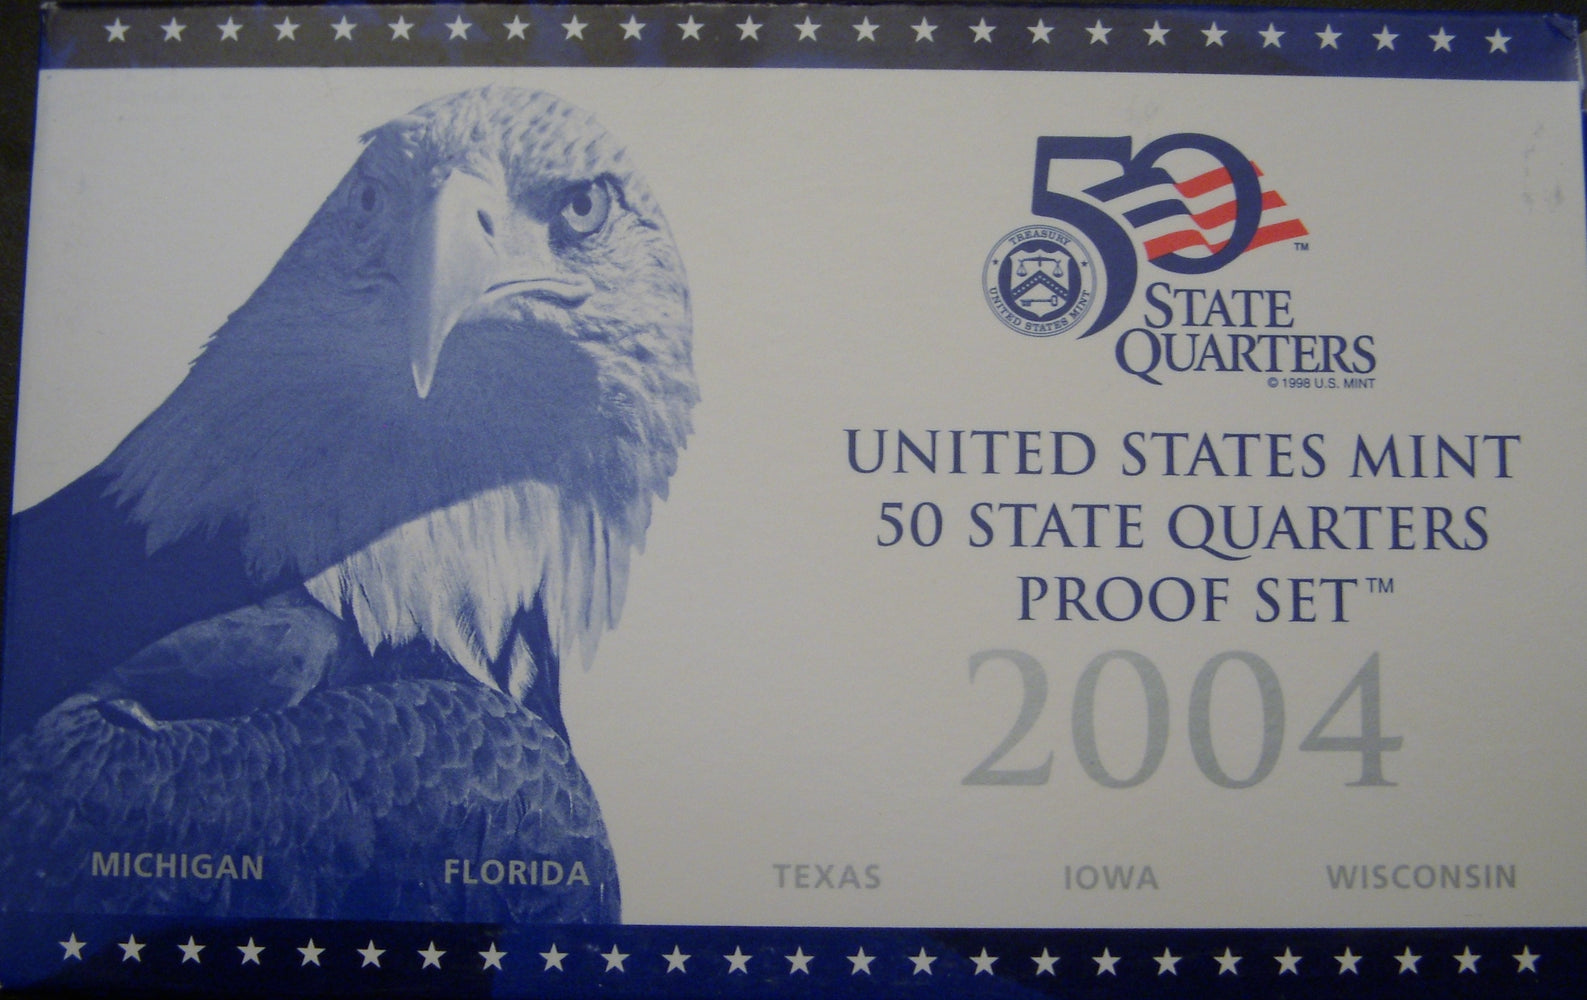 2004 Clad Proof Quarter Sets